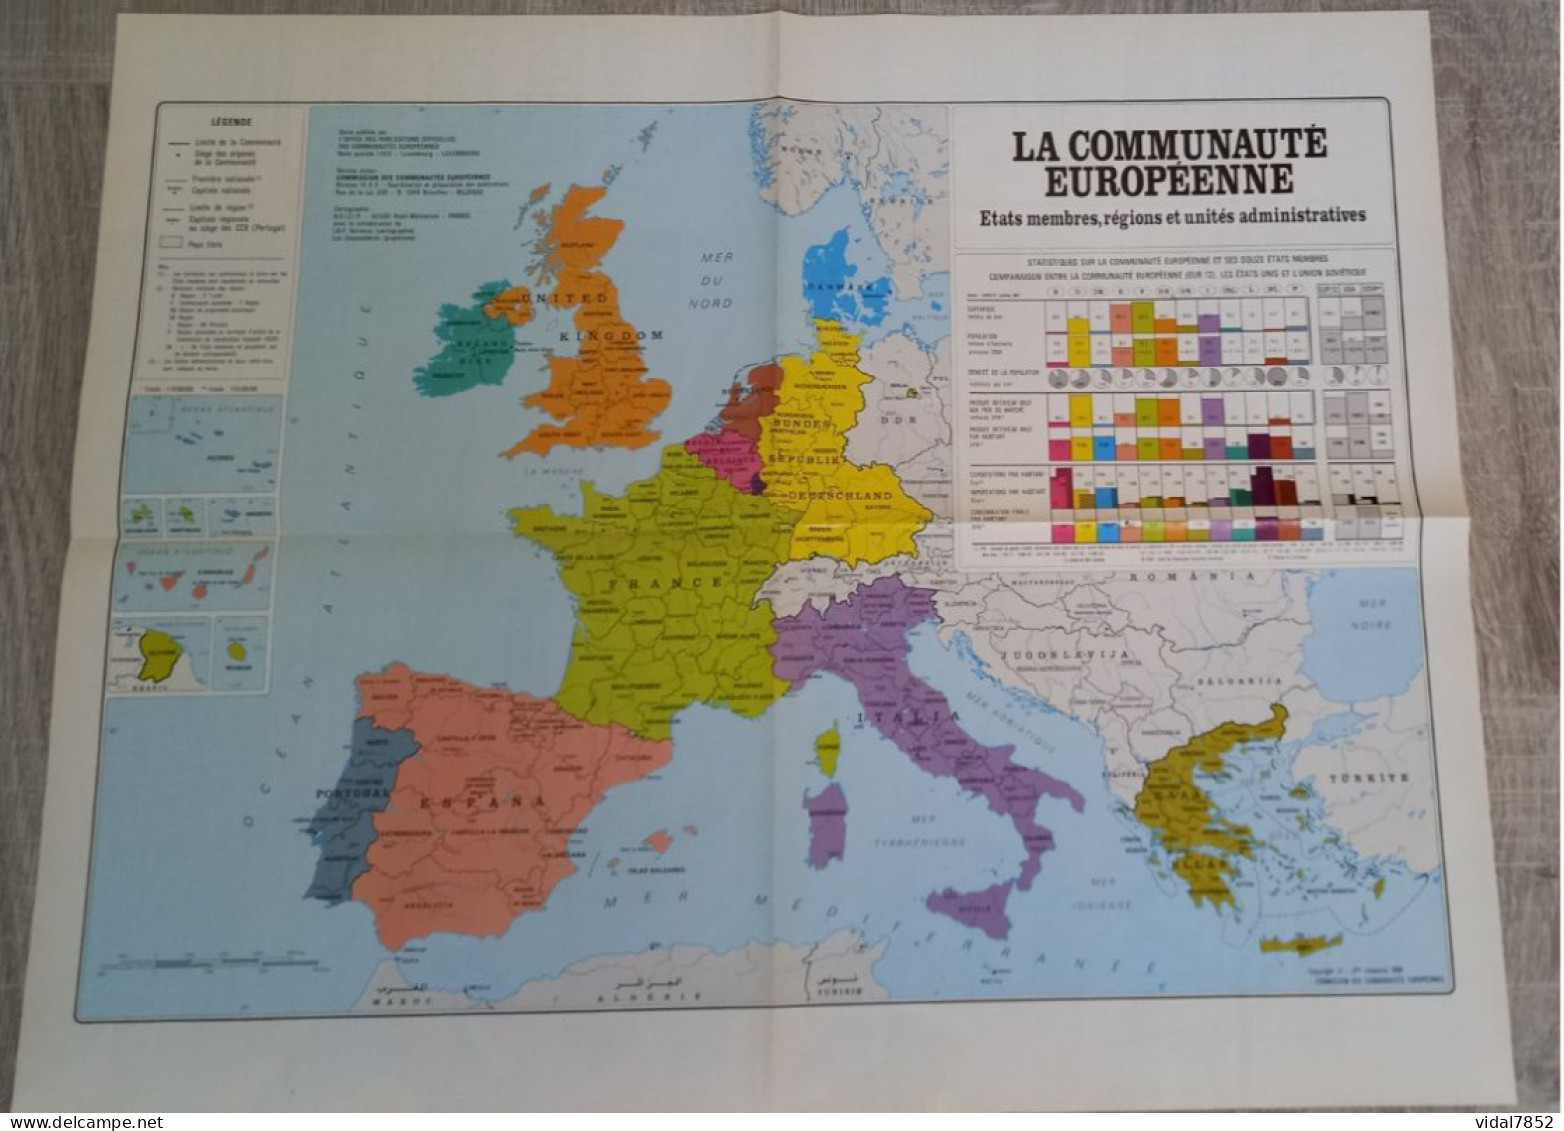 Calendrier-Almanach Des P.T.T 1990-Poster Intérieur Communauté Europèenne-Parc Axtérix Département AIN-01-Référence 421 - Grossformat : 1981-90